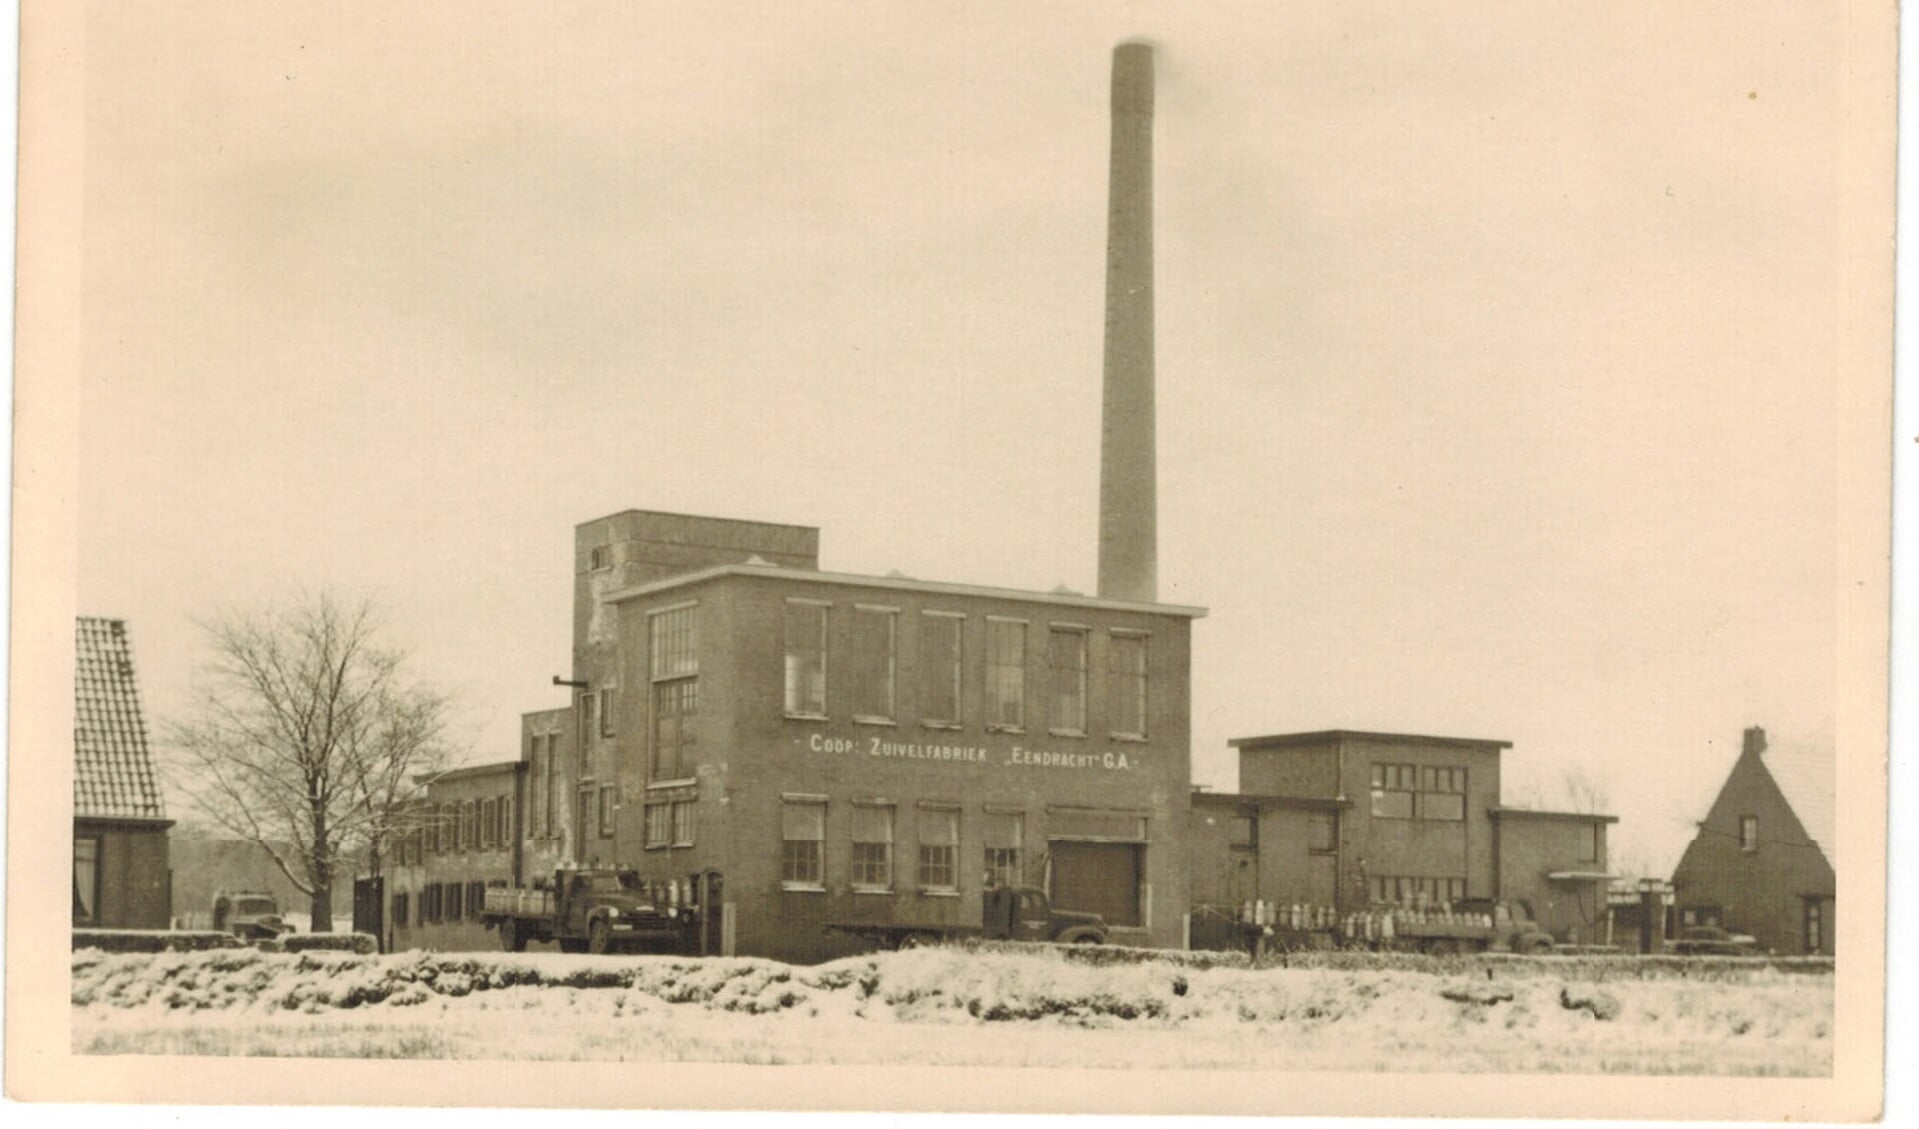 De Eendracht als zuivelfabriek in 1953.